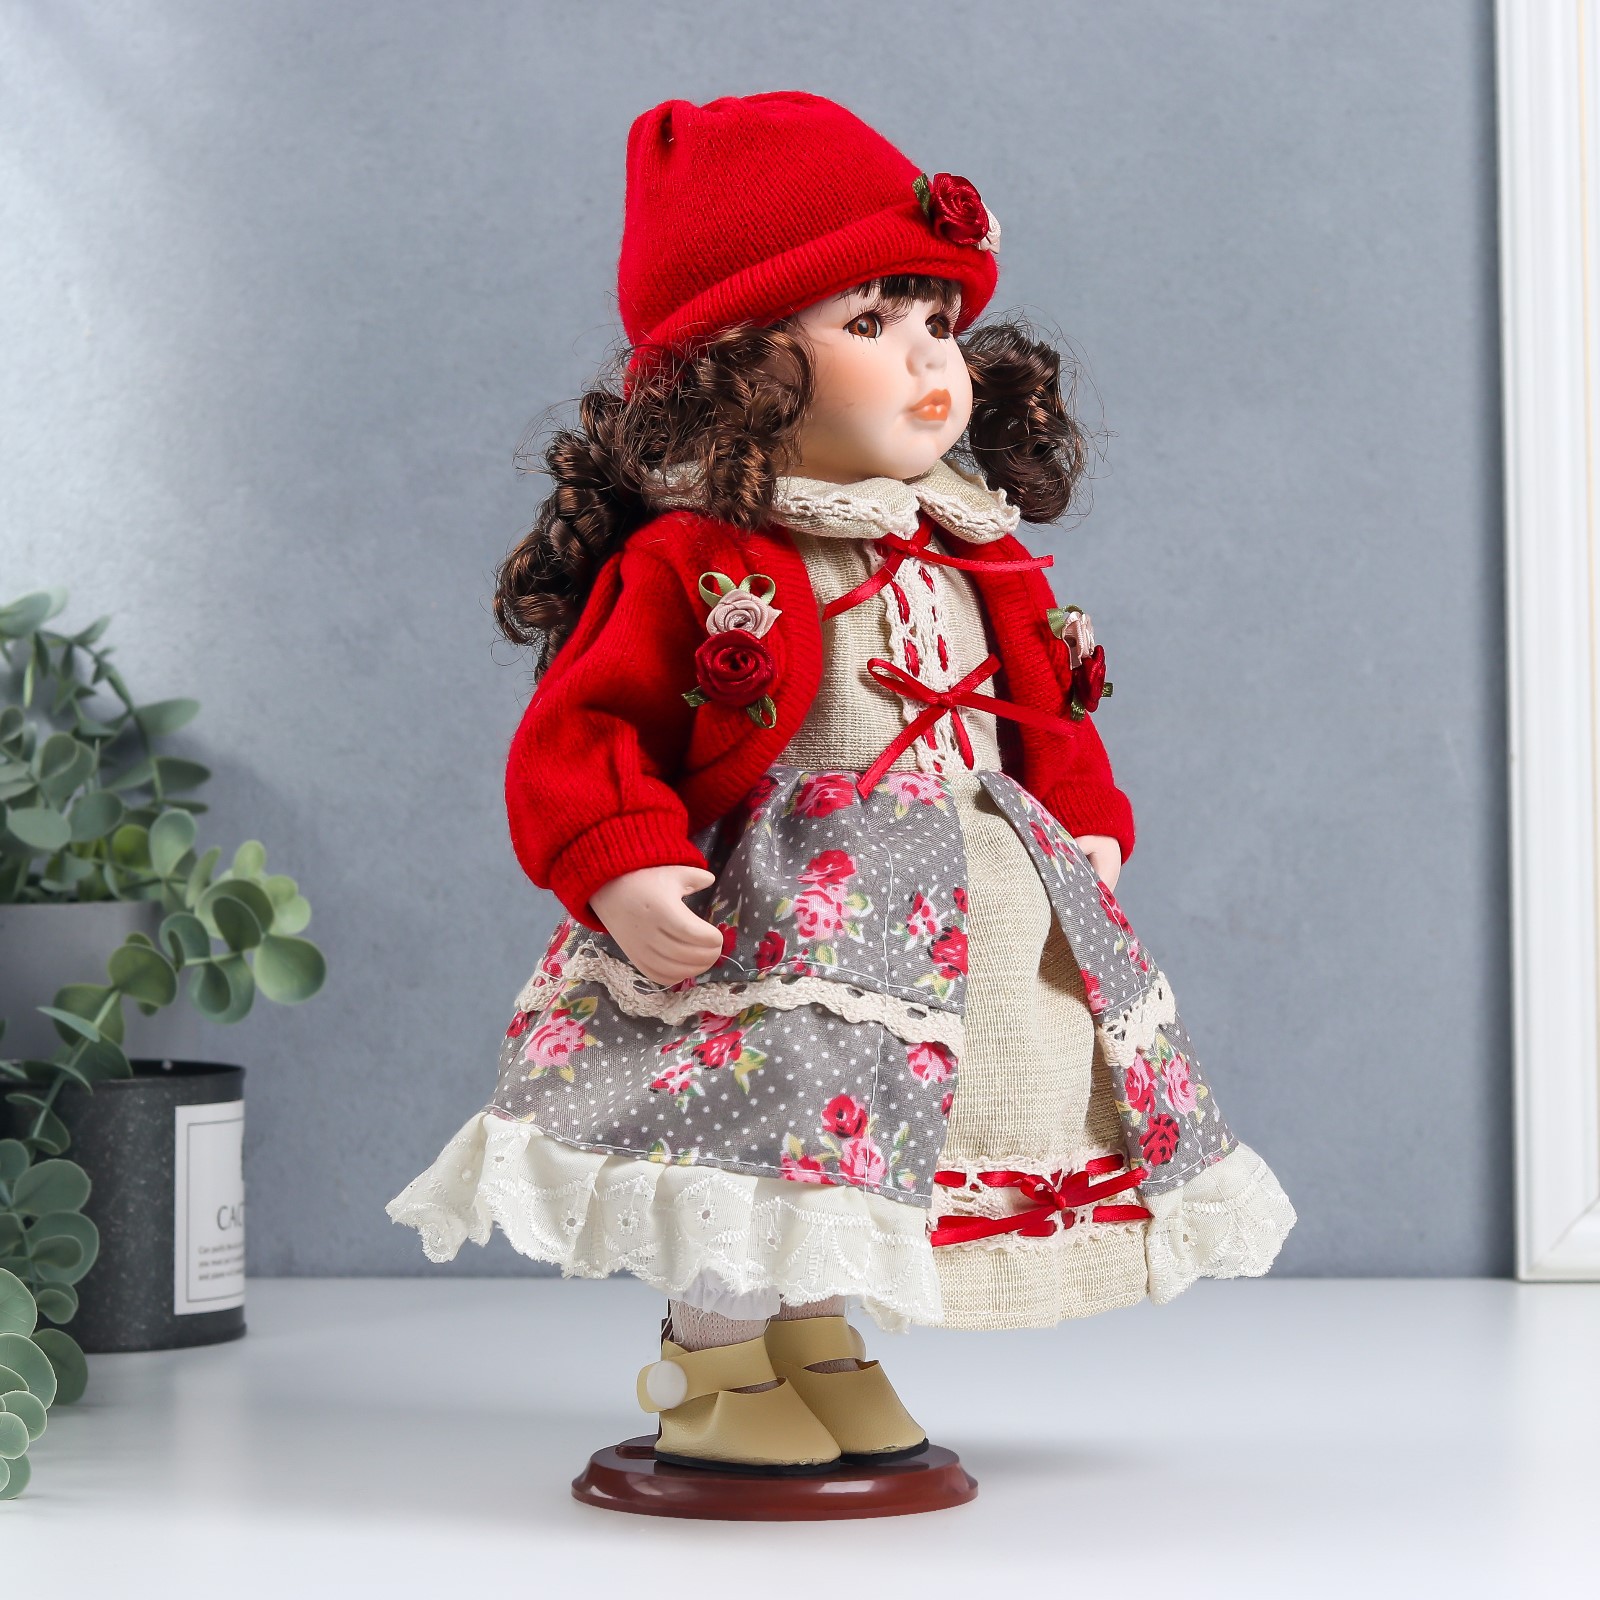 Кукла коллекционная Зимнее волшебство керамика «Лиза в платье с цветами в красном жакете» 30 см - фото 2